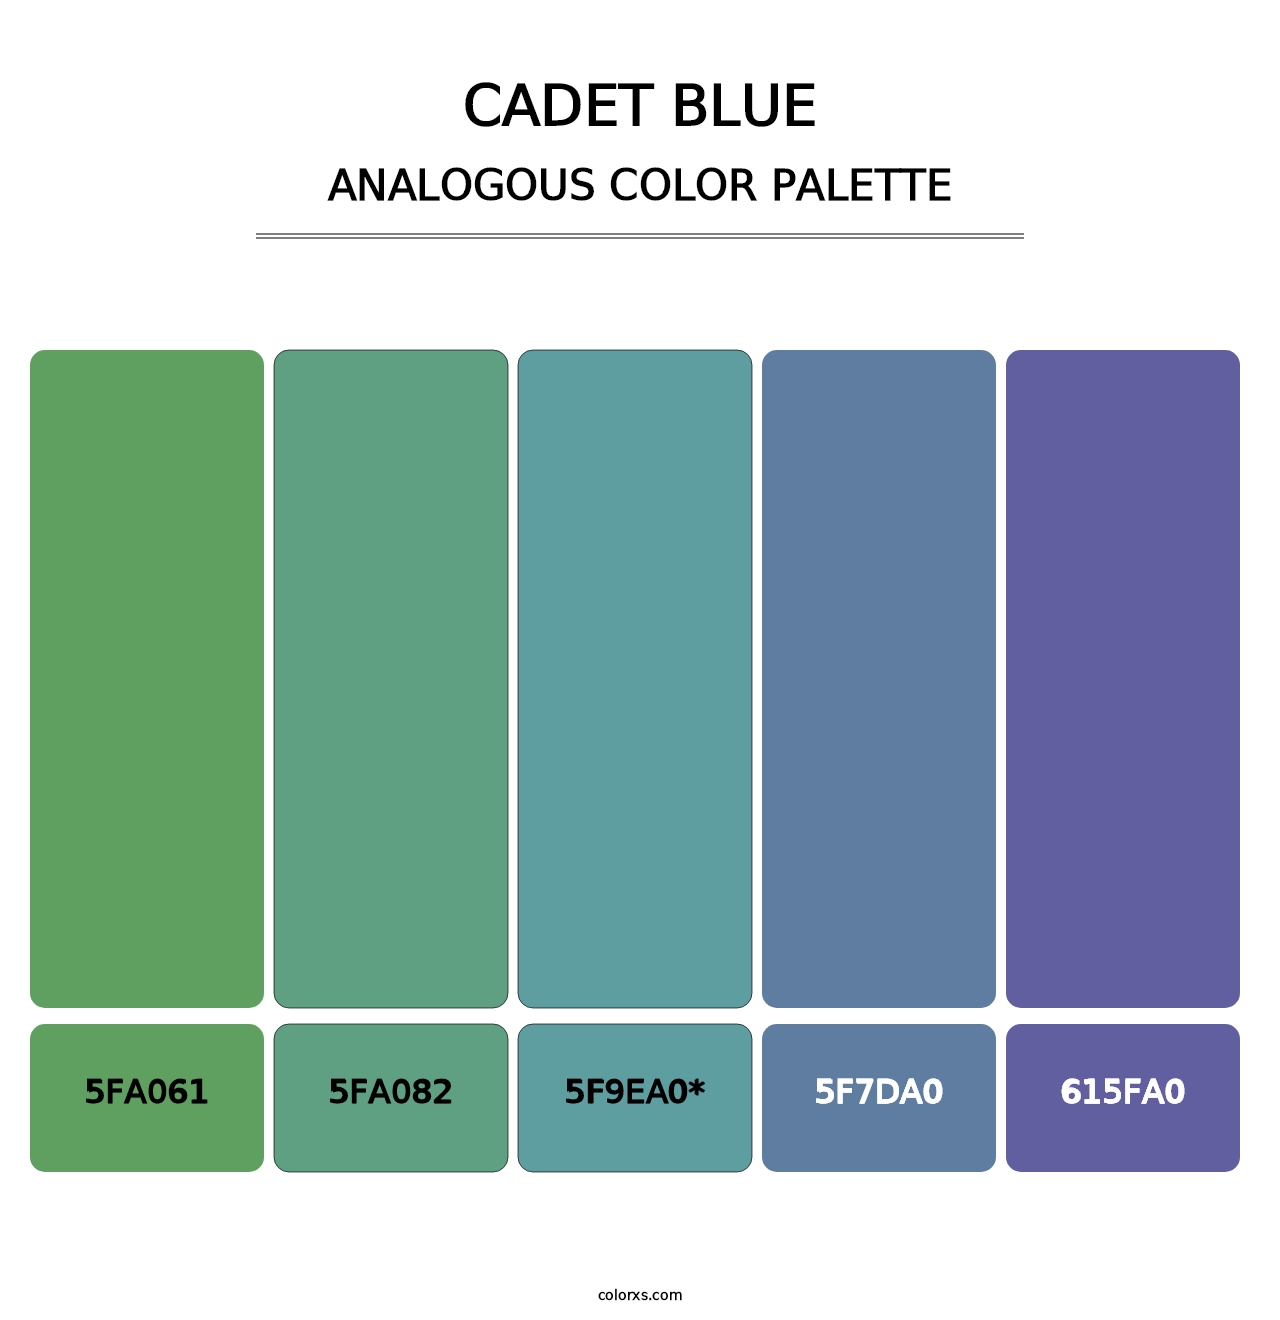 Cadet Blue - Analogous Color Palette